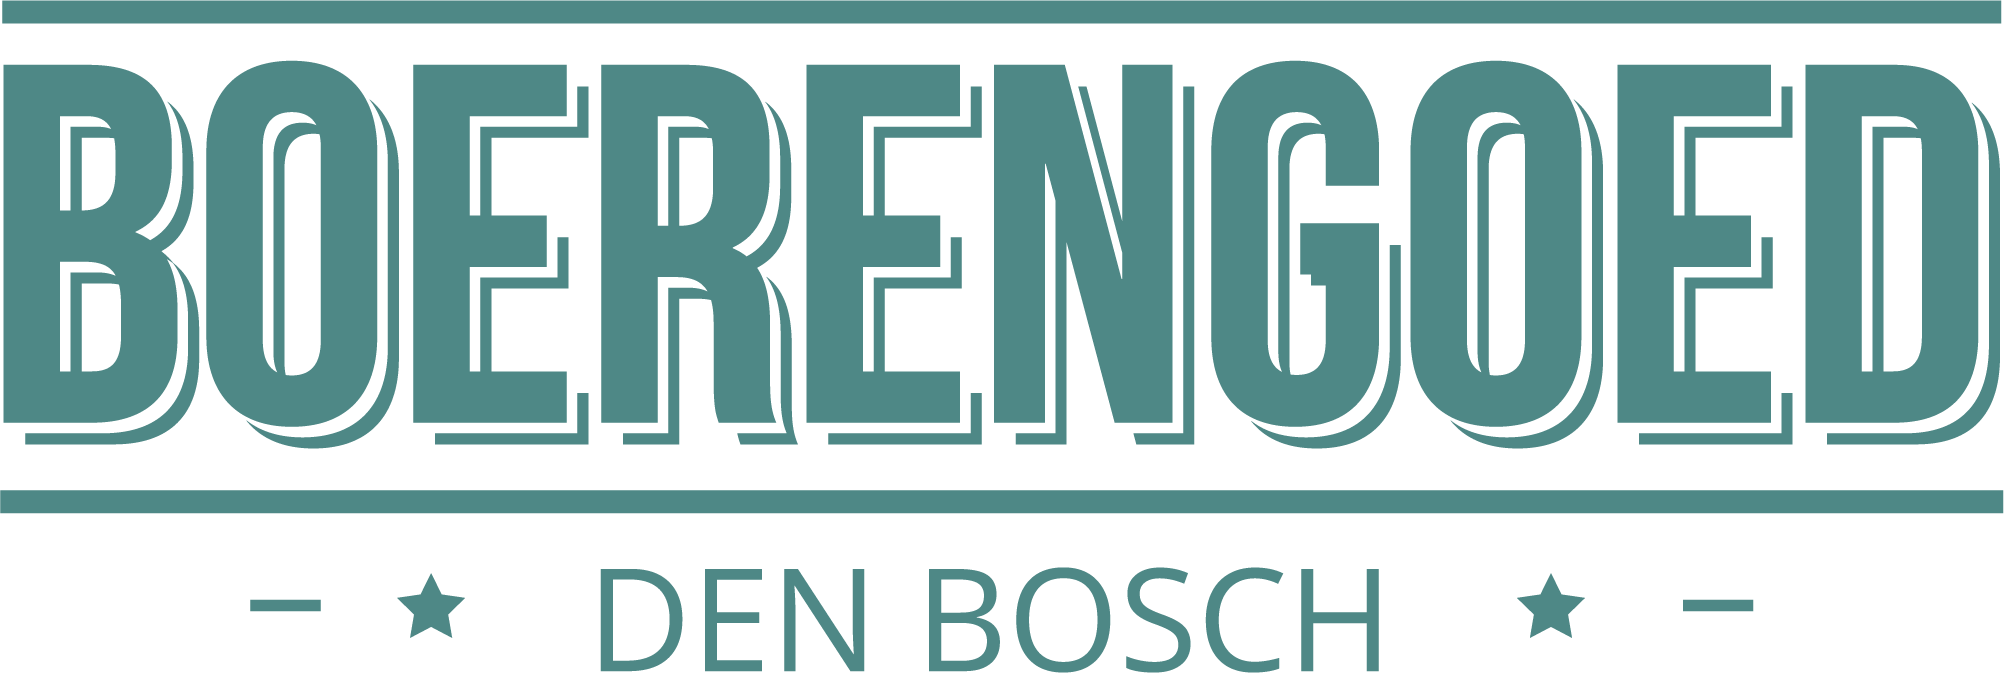 Boerengoed Den Bosch